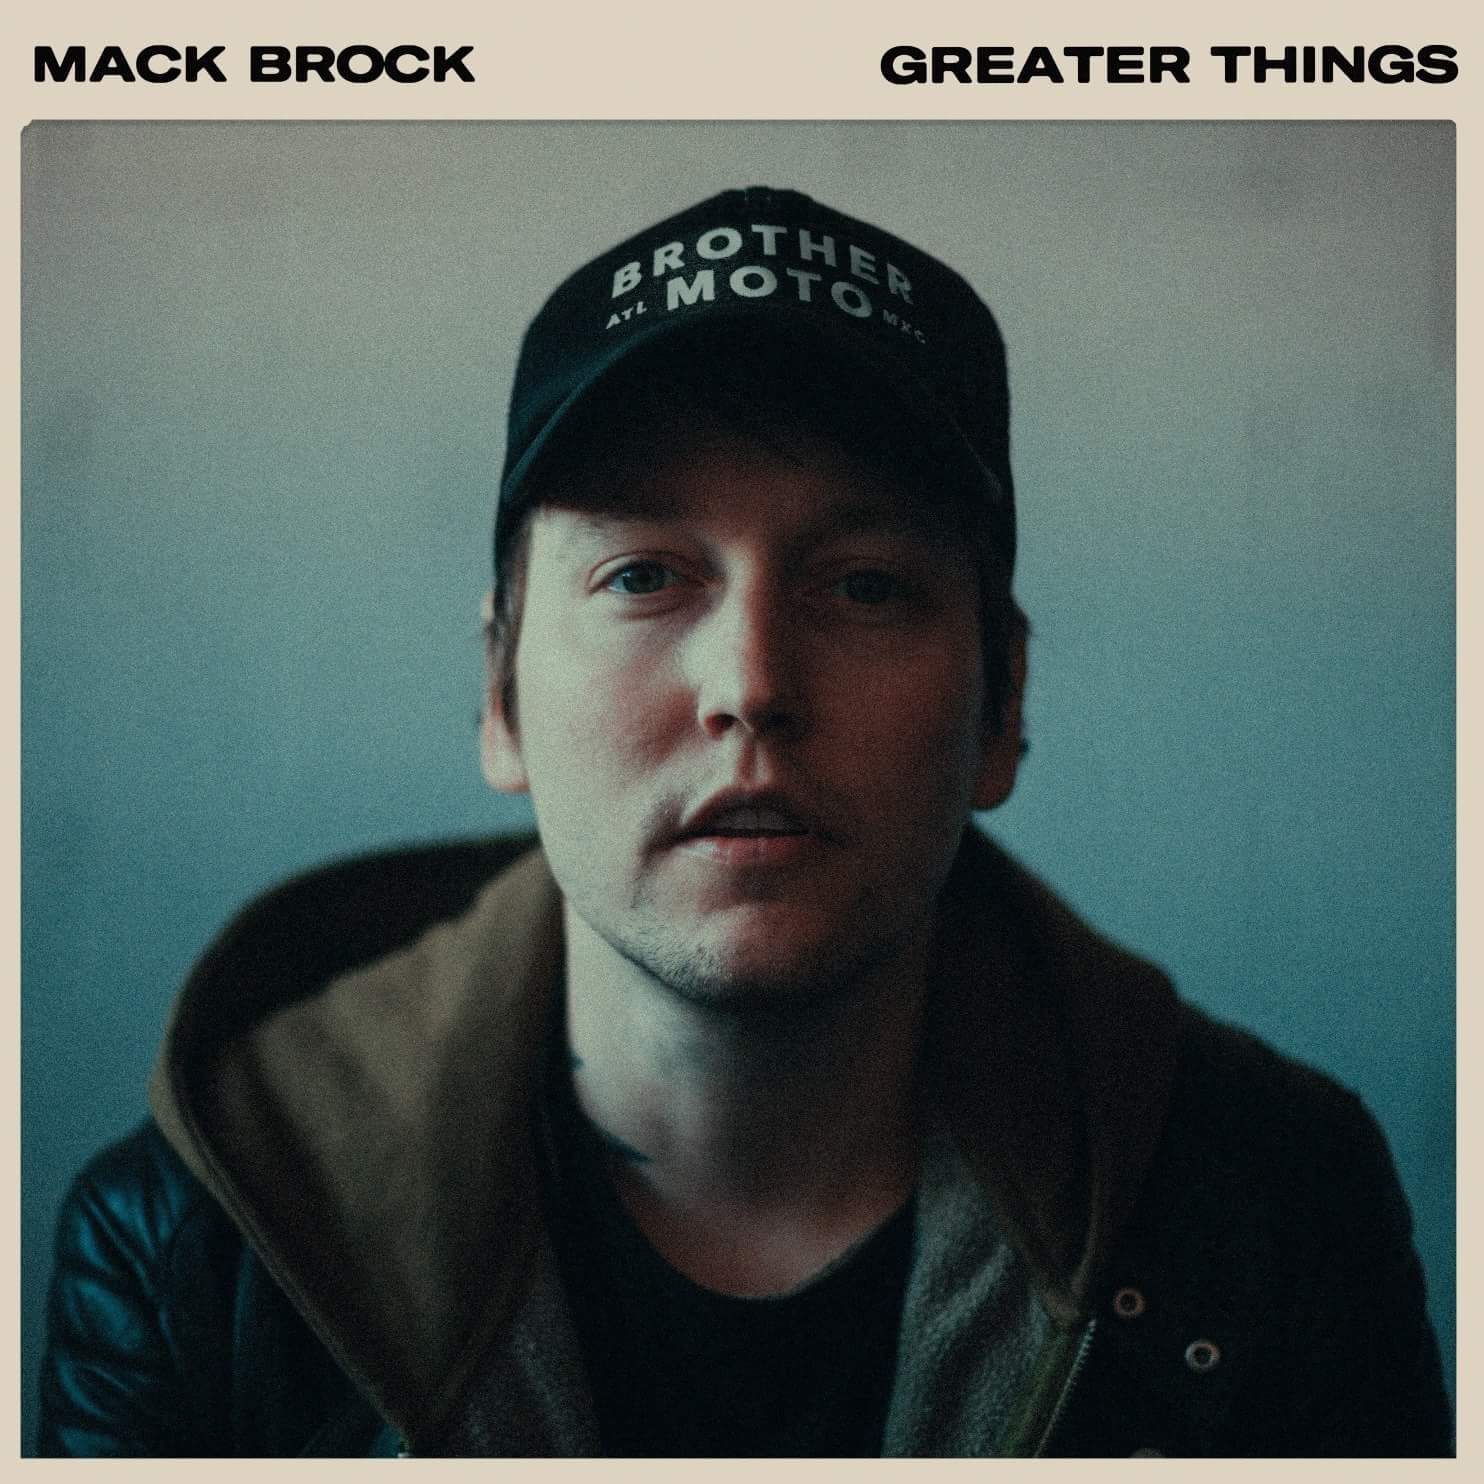 Mack Brock - Greater Things